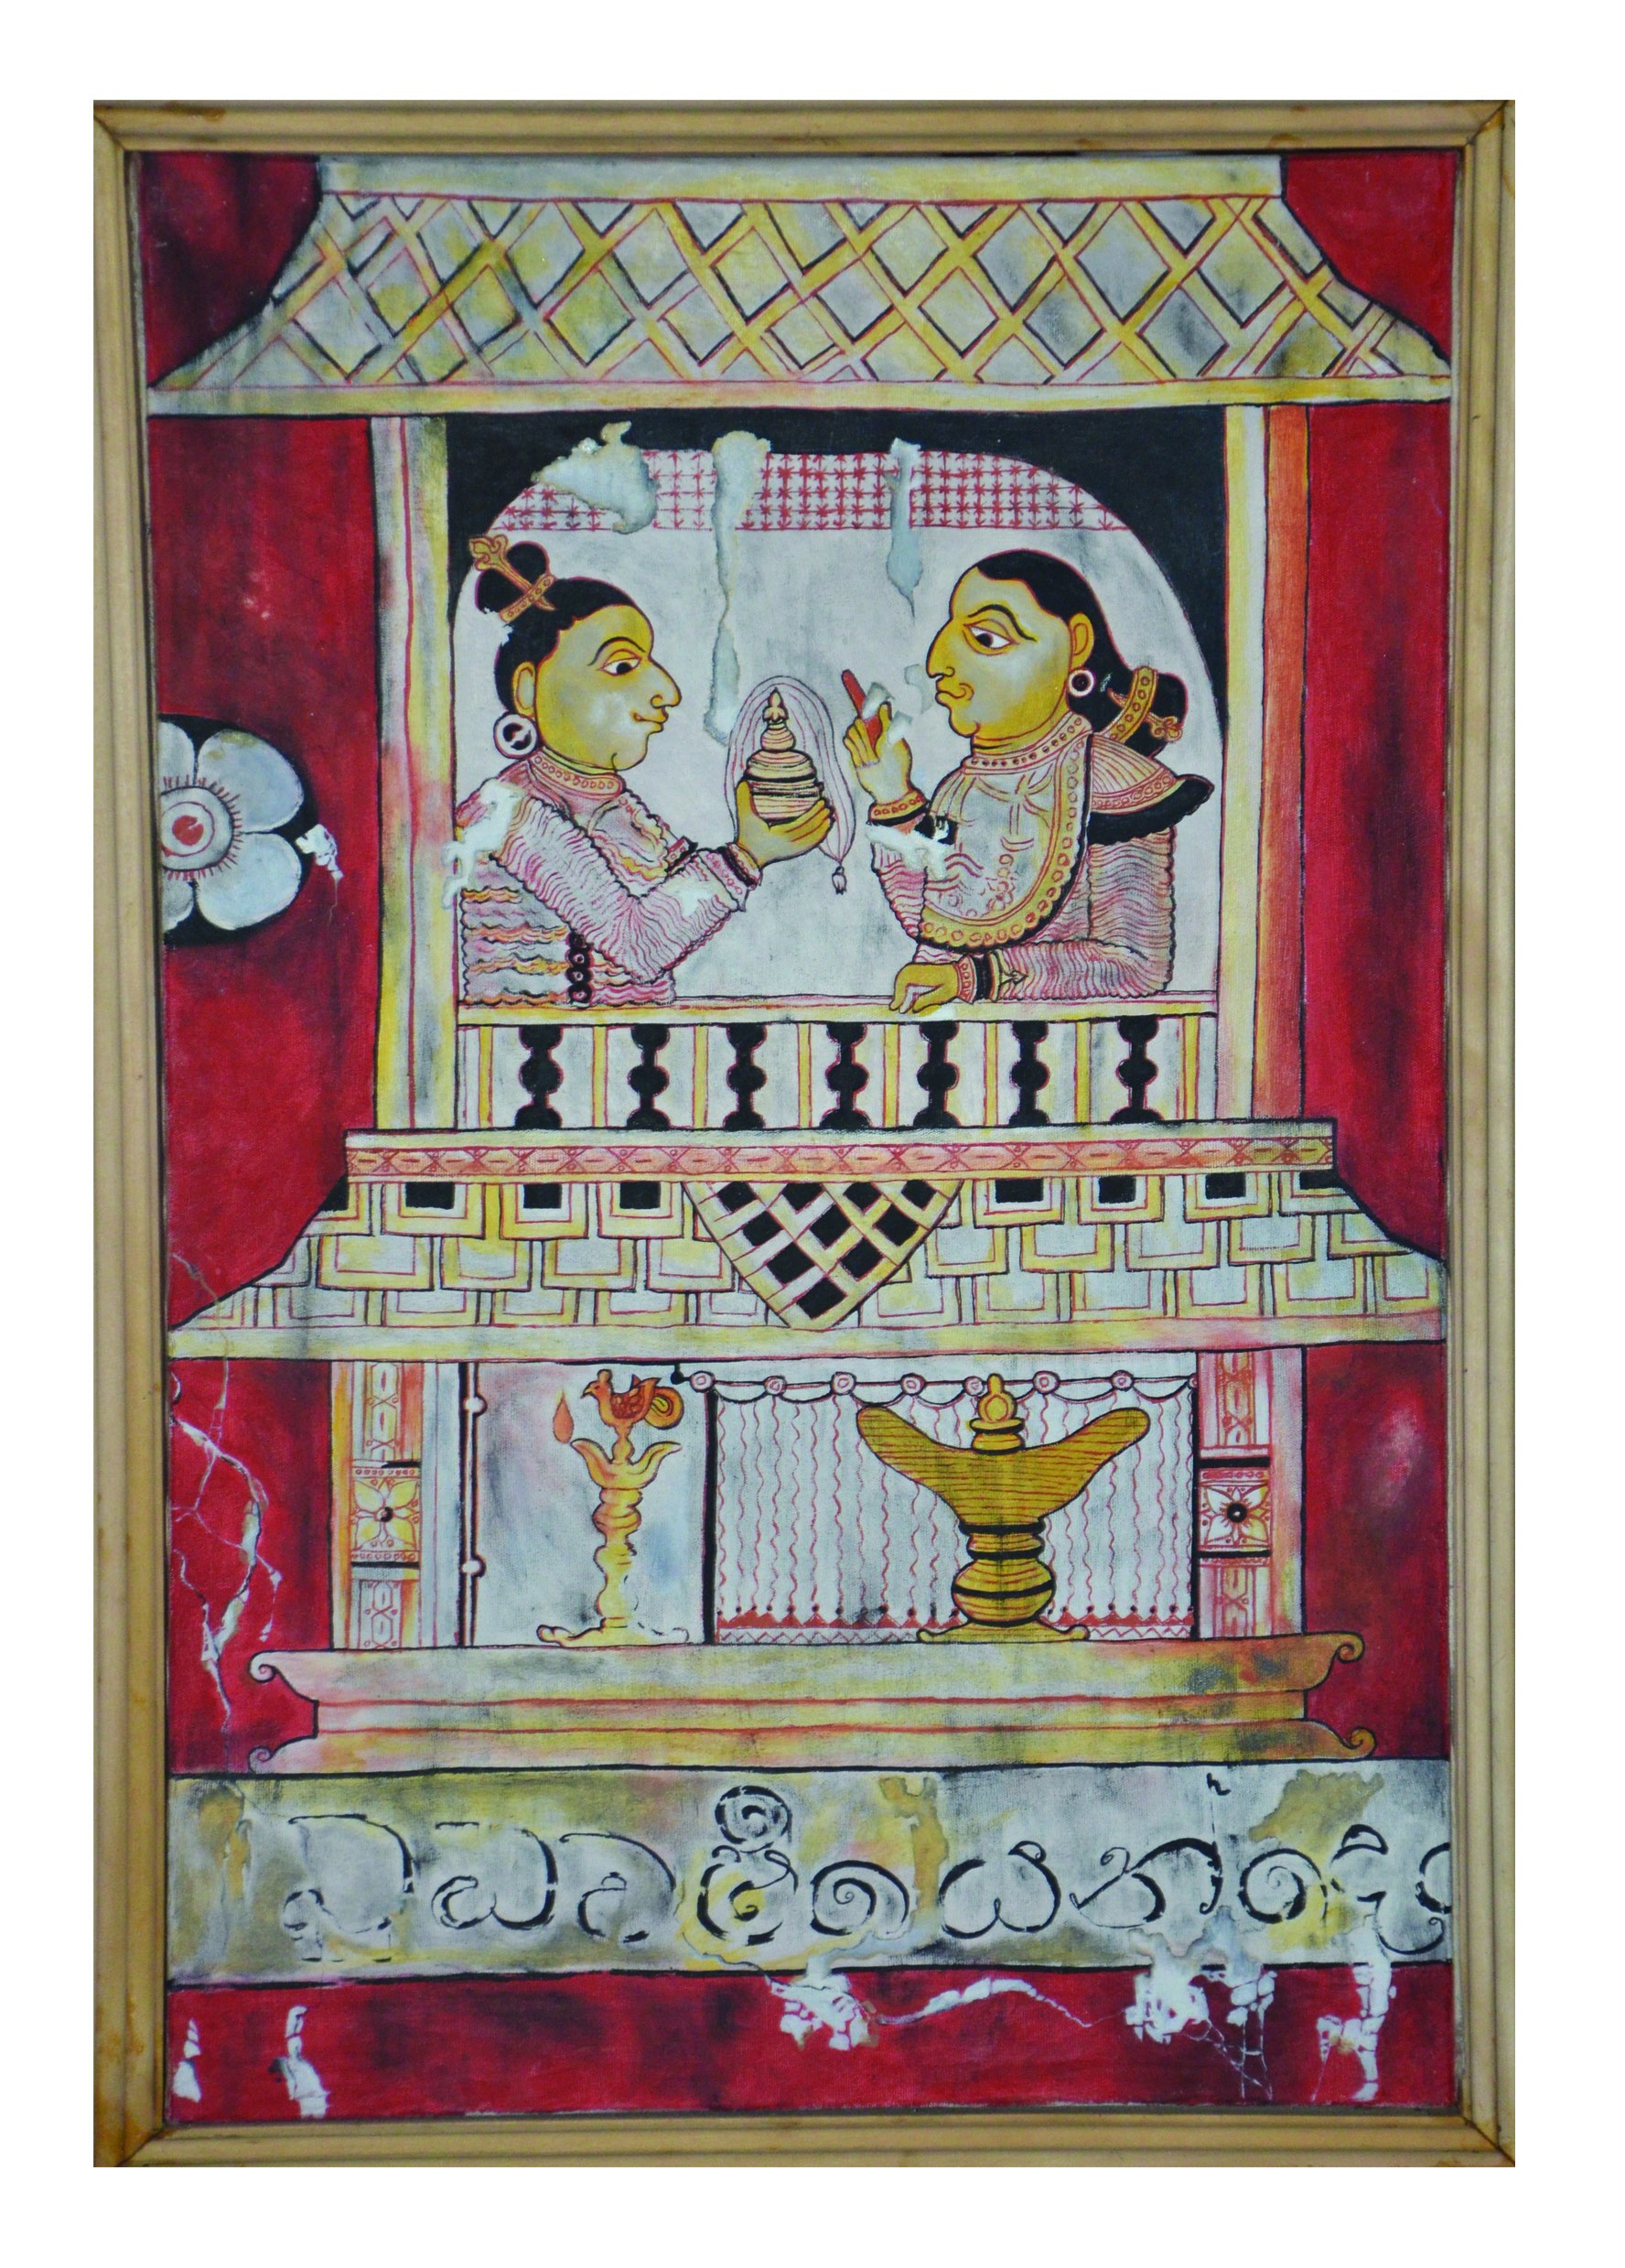 Mahamaya deviya by Chandana Bandara Samarakoon